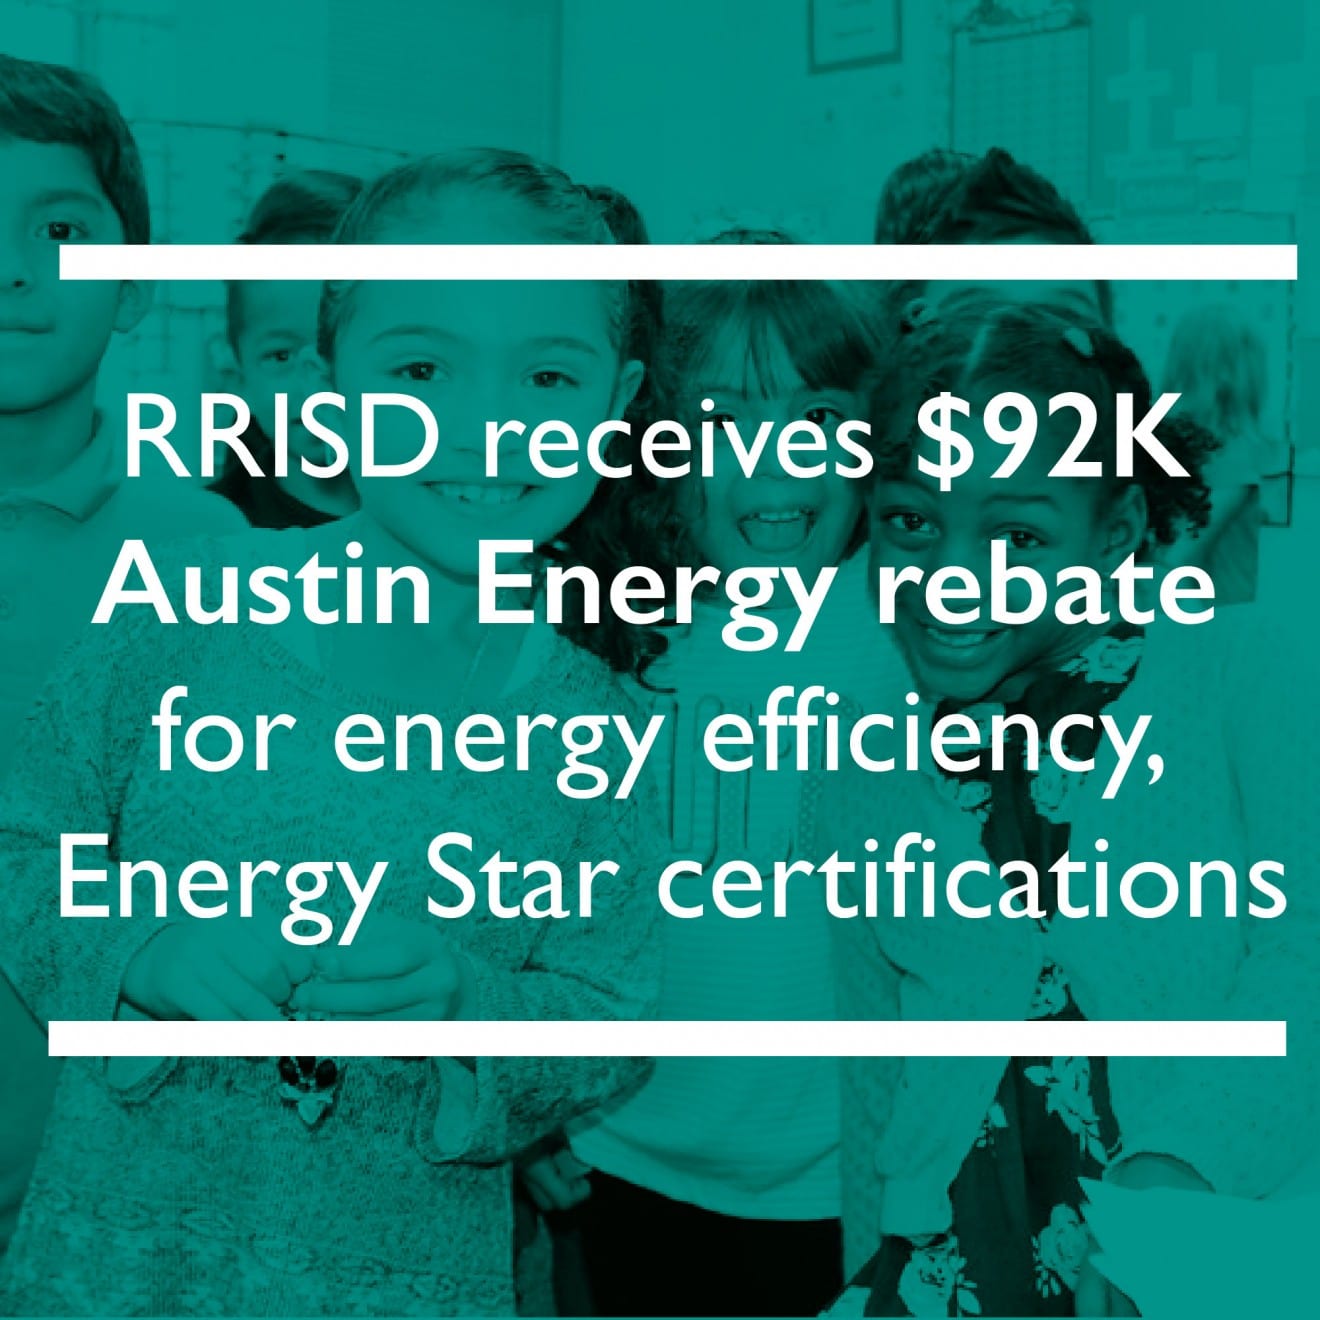 District receives 92K Austin Energy rebate for energy efficiency